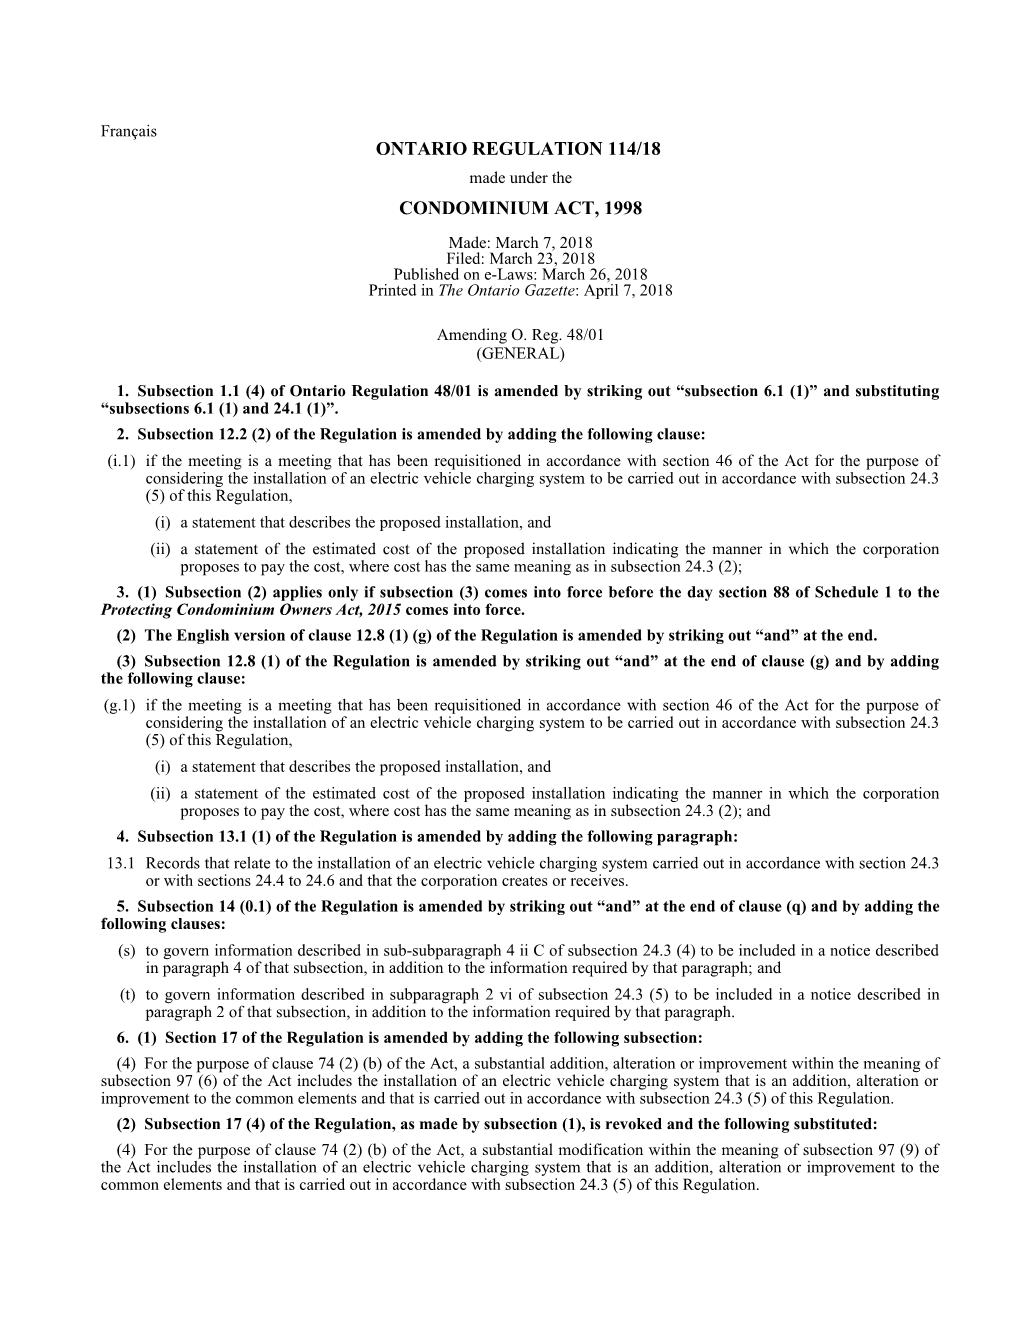 CONDOMINIUM ACT, 1998 - O. Reg. 114/18